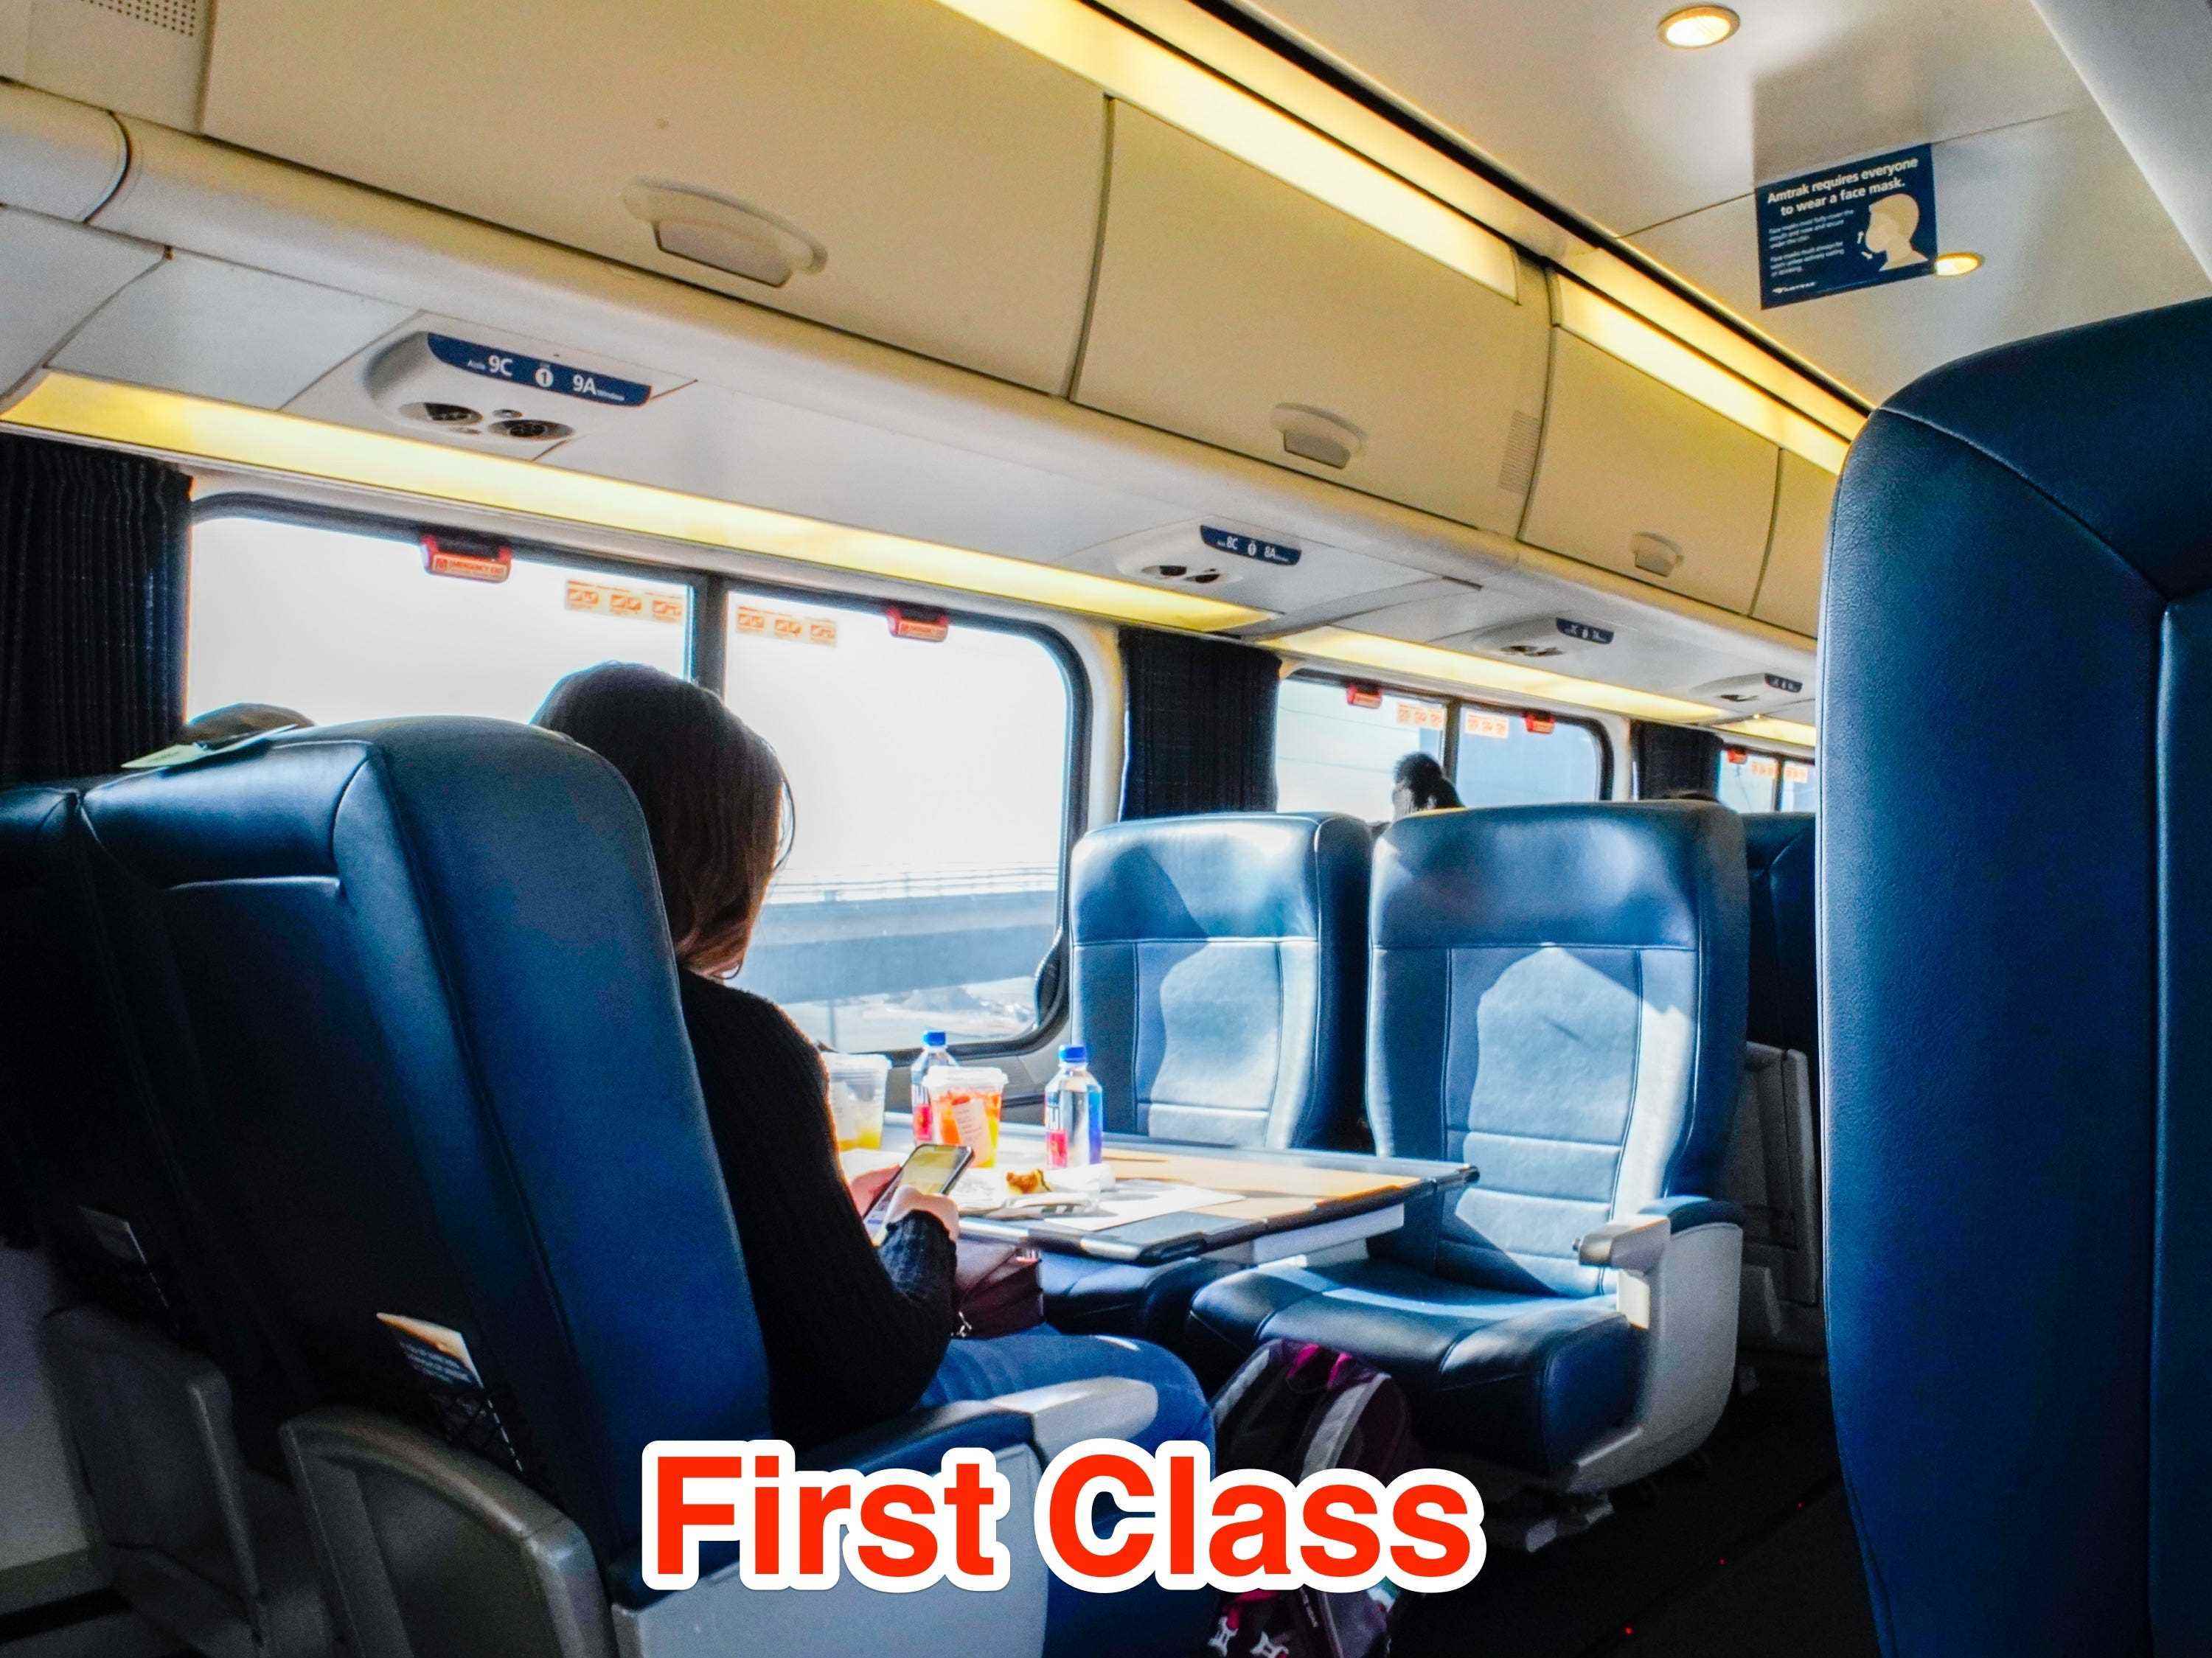 Eine Person sitzt allein in einem Amtrak Acela First Class Waggon